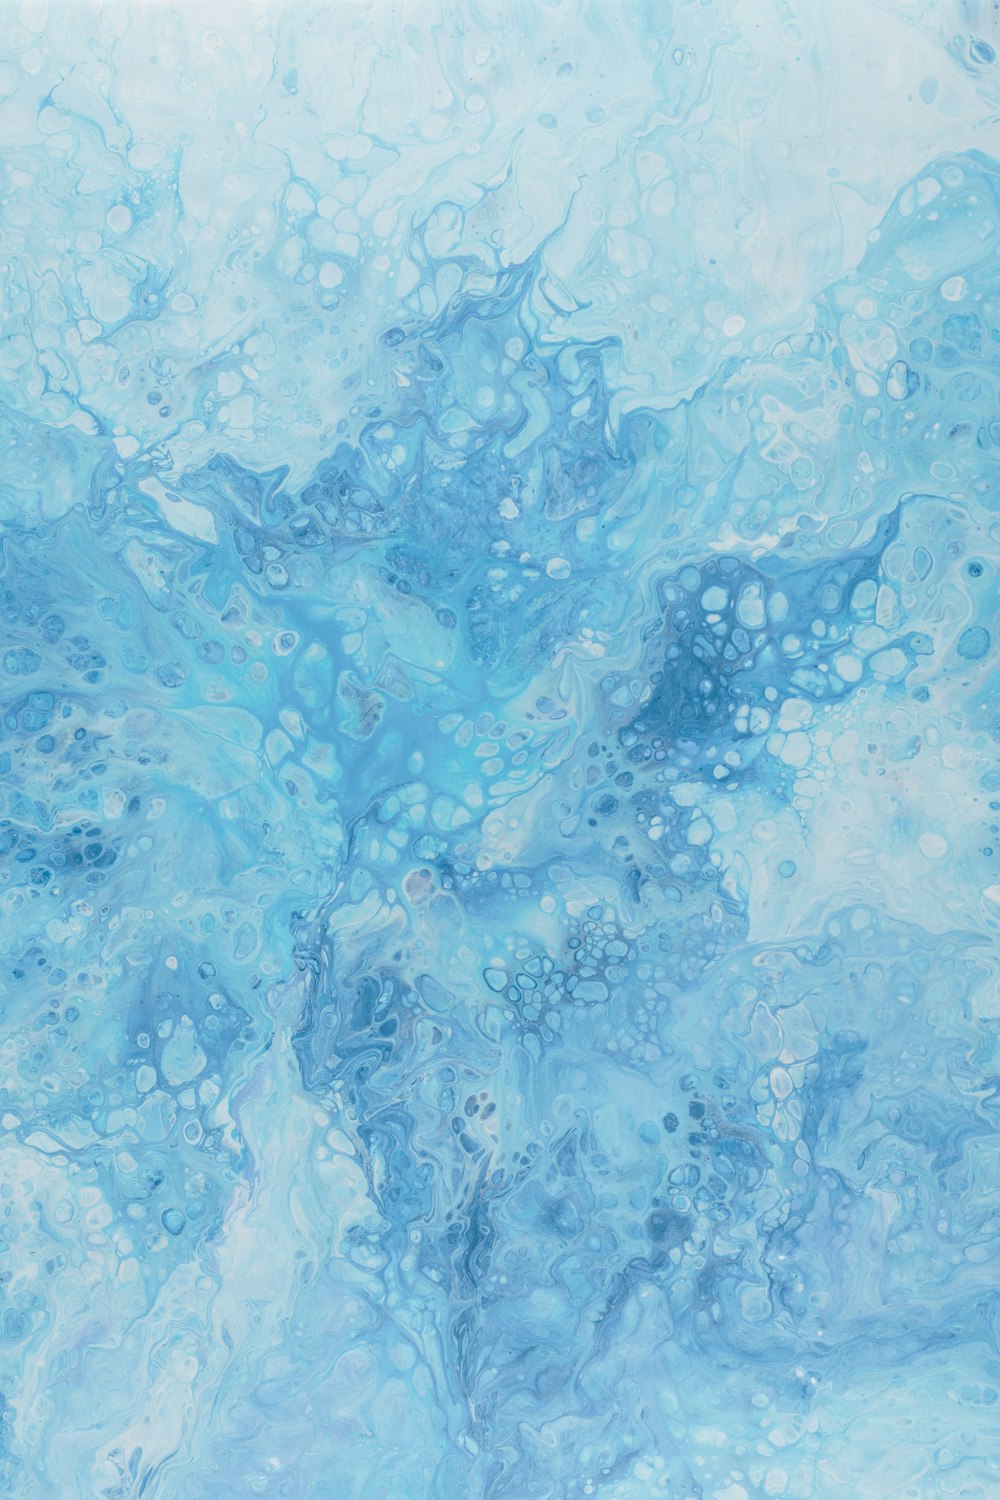 Una pintura abstracta de colores azul y blanco